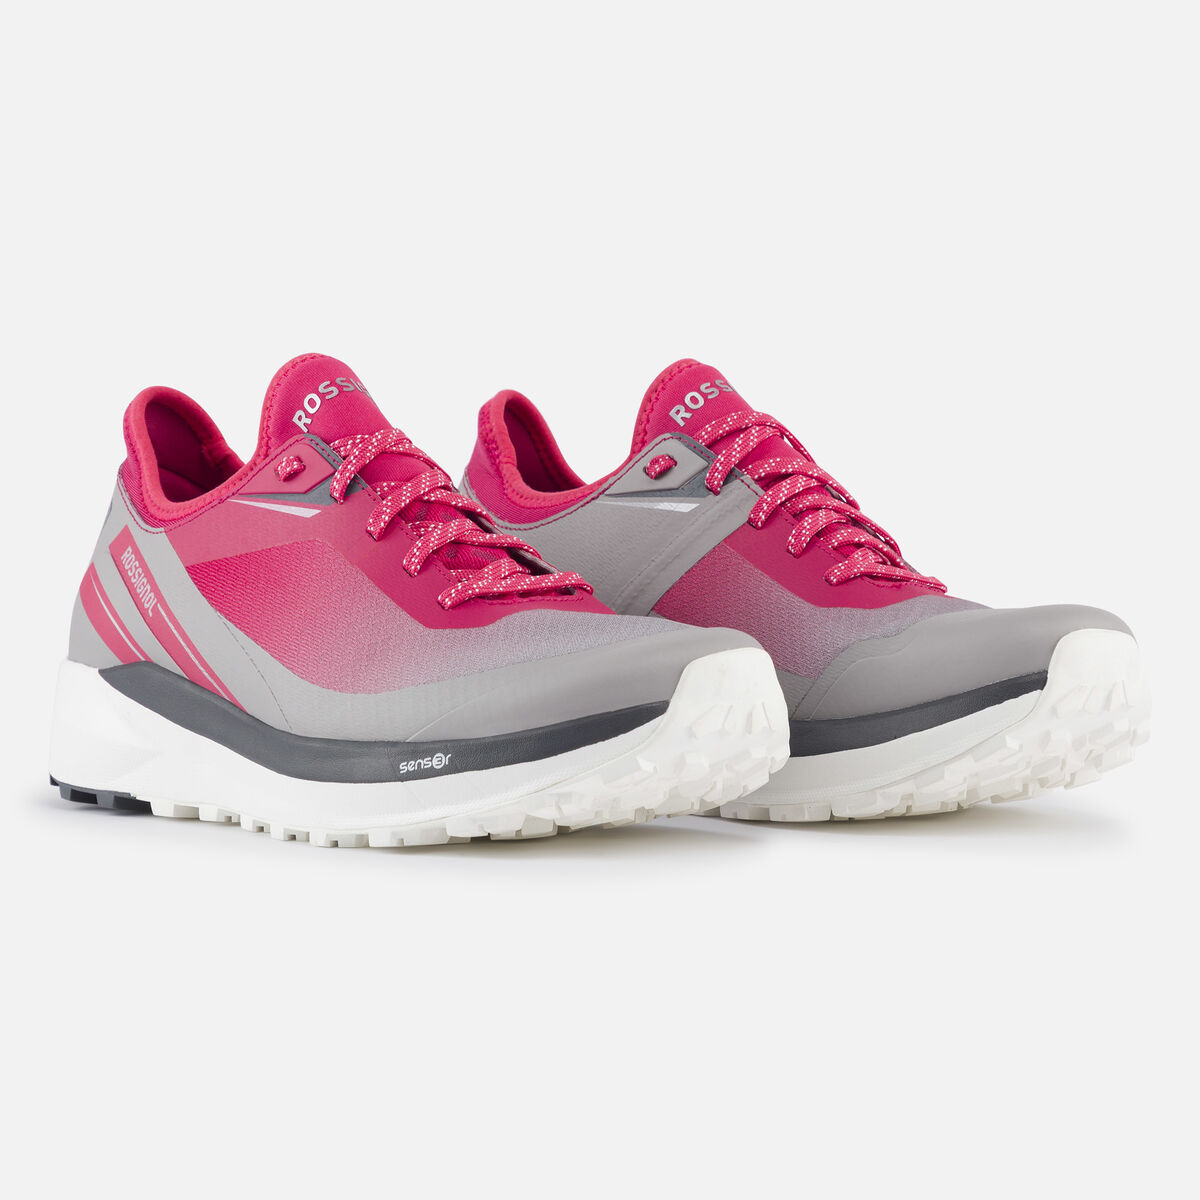 Chaussures Active outdoor légères roses femme